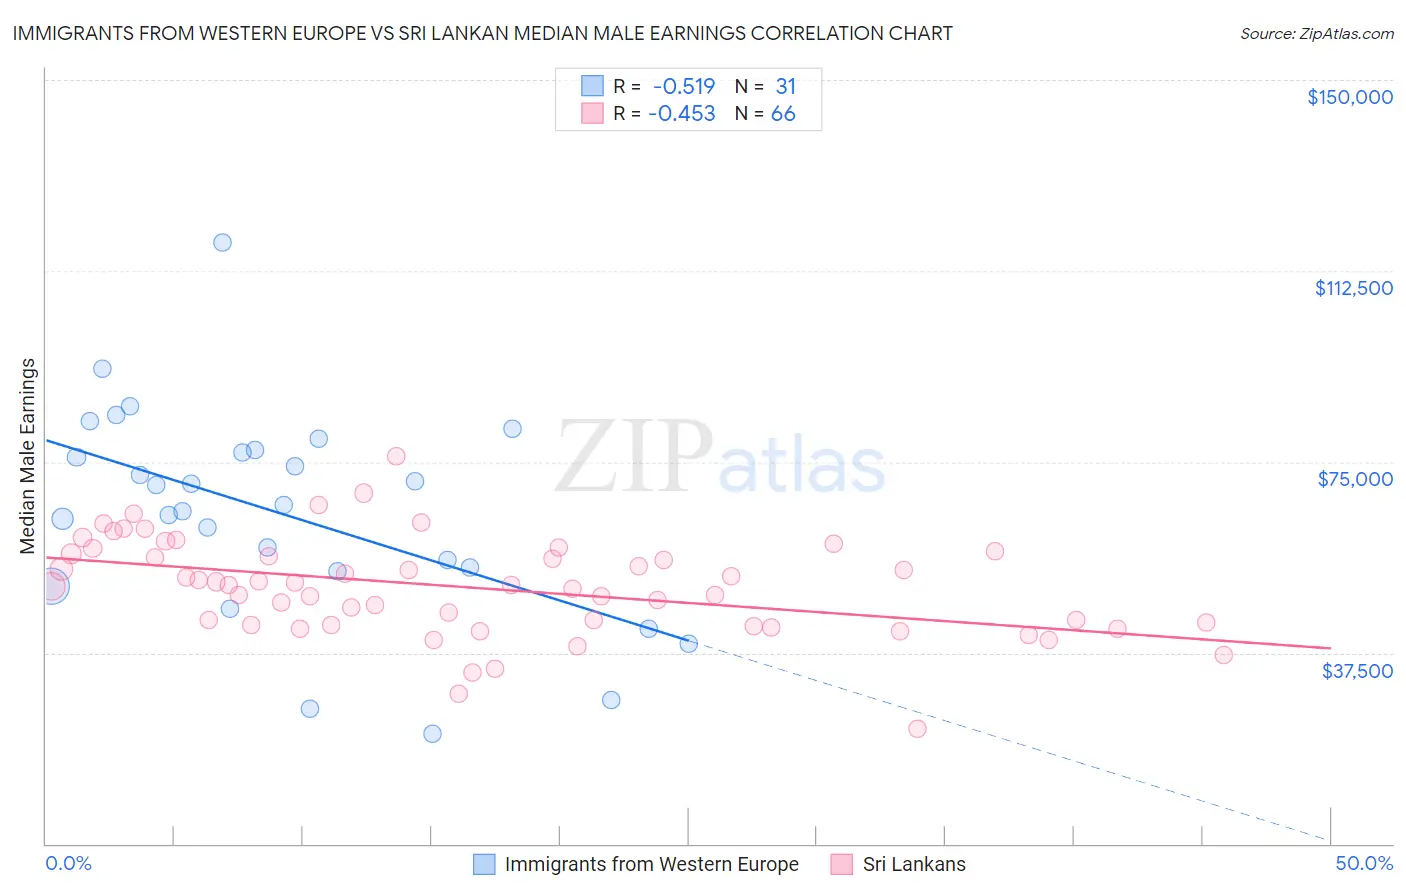 Immigrants from Western Europe vs Sri Lankan Median Male Earnings